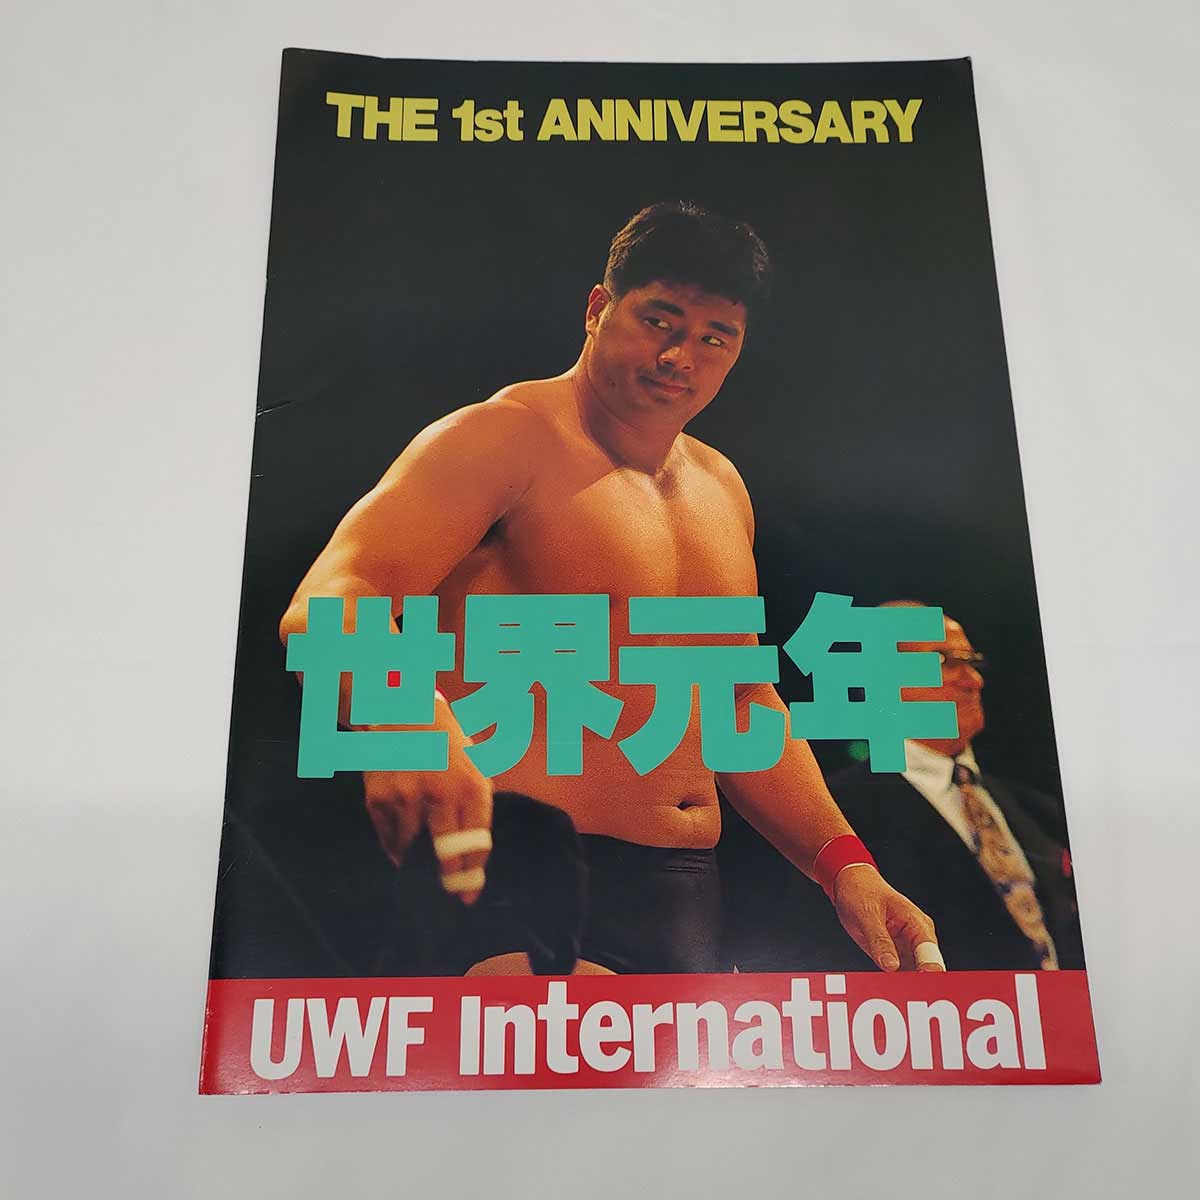 【中古】UWF インターナショナル 世界元年 THE 1st ANNIVERSARY 格闘技 パンフレット ※チケット半券あり